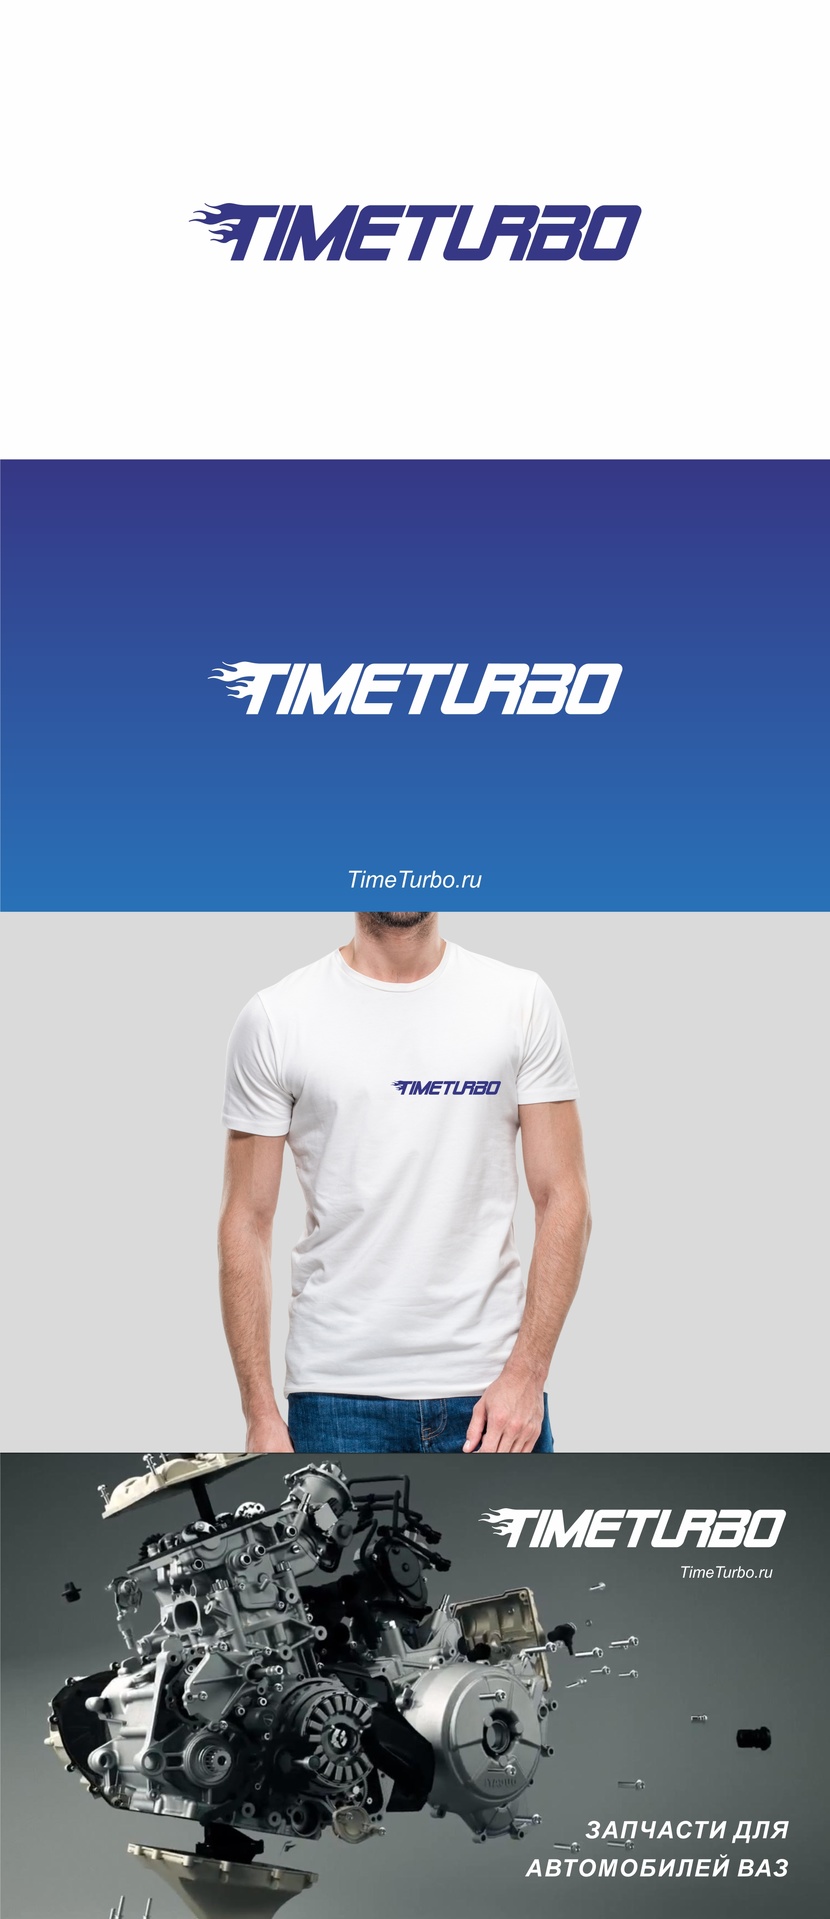 TimeTurbo - Редизайн логотипа и фирменного стиля интернет-магазина автомобильных запчастей  -  автор EVGENIA ZHURANOVA